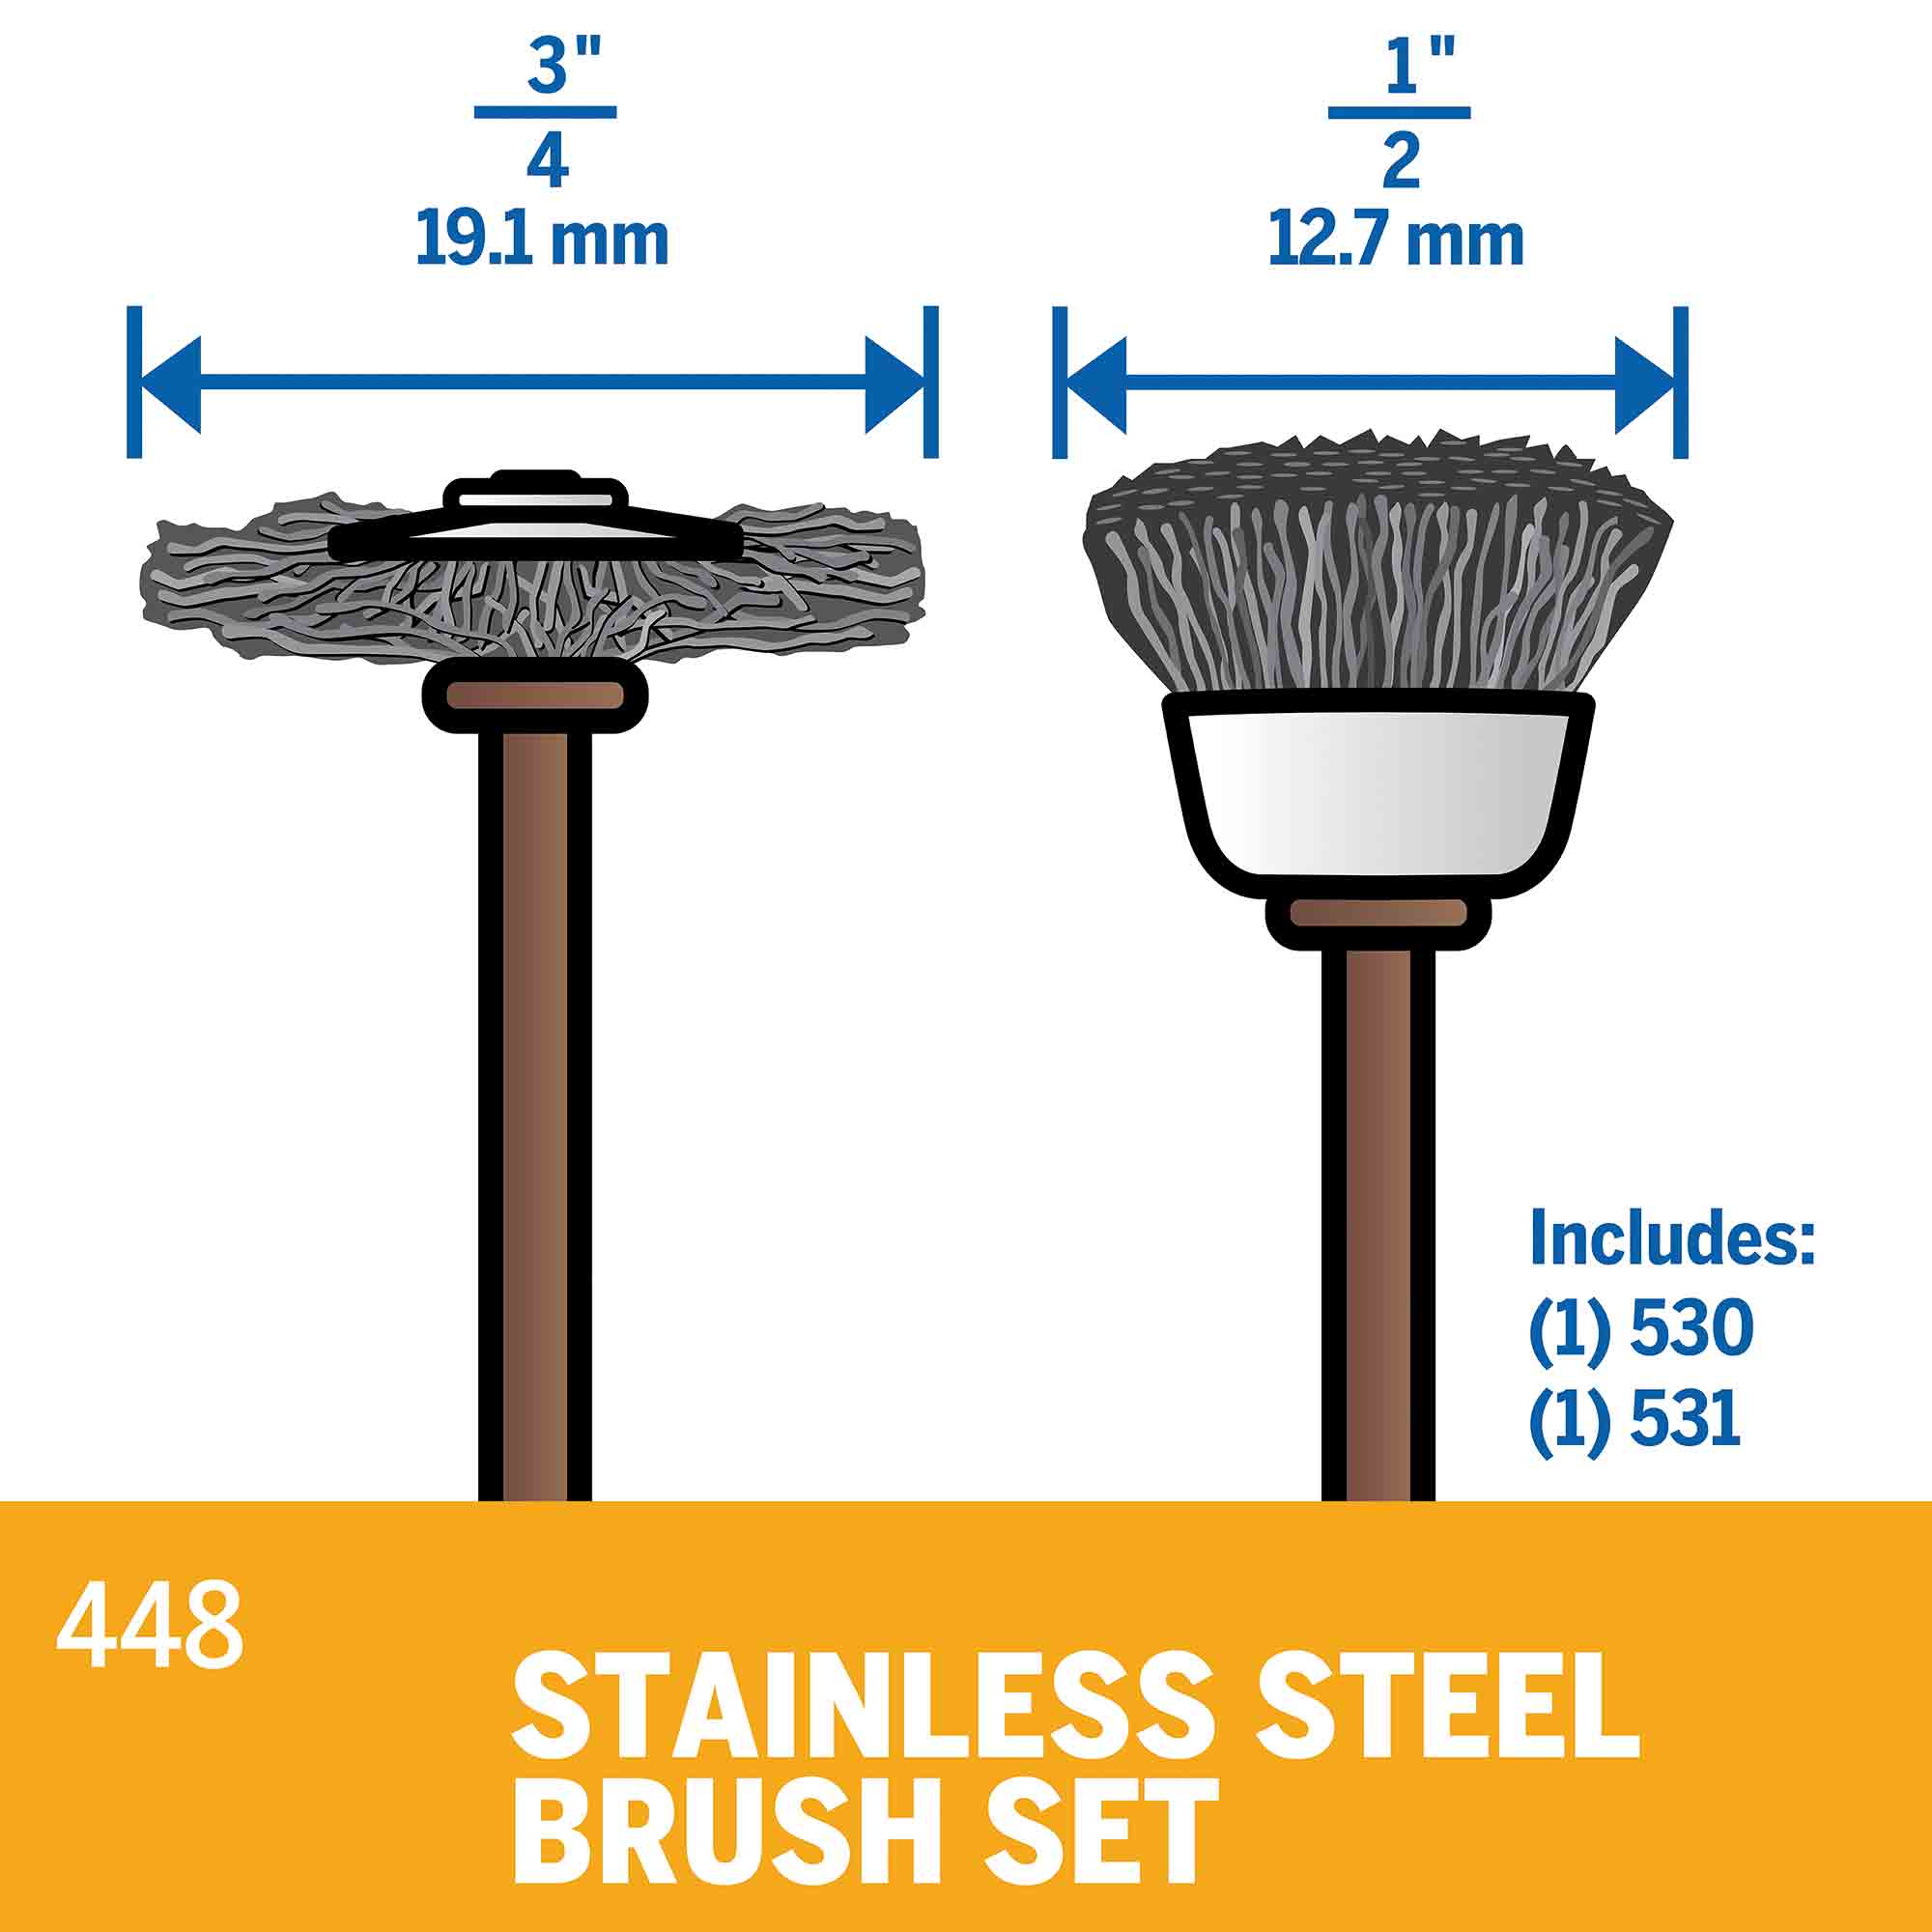 Dremel 448 Stainless Steel Brush Set - 2pc